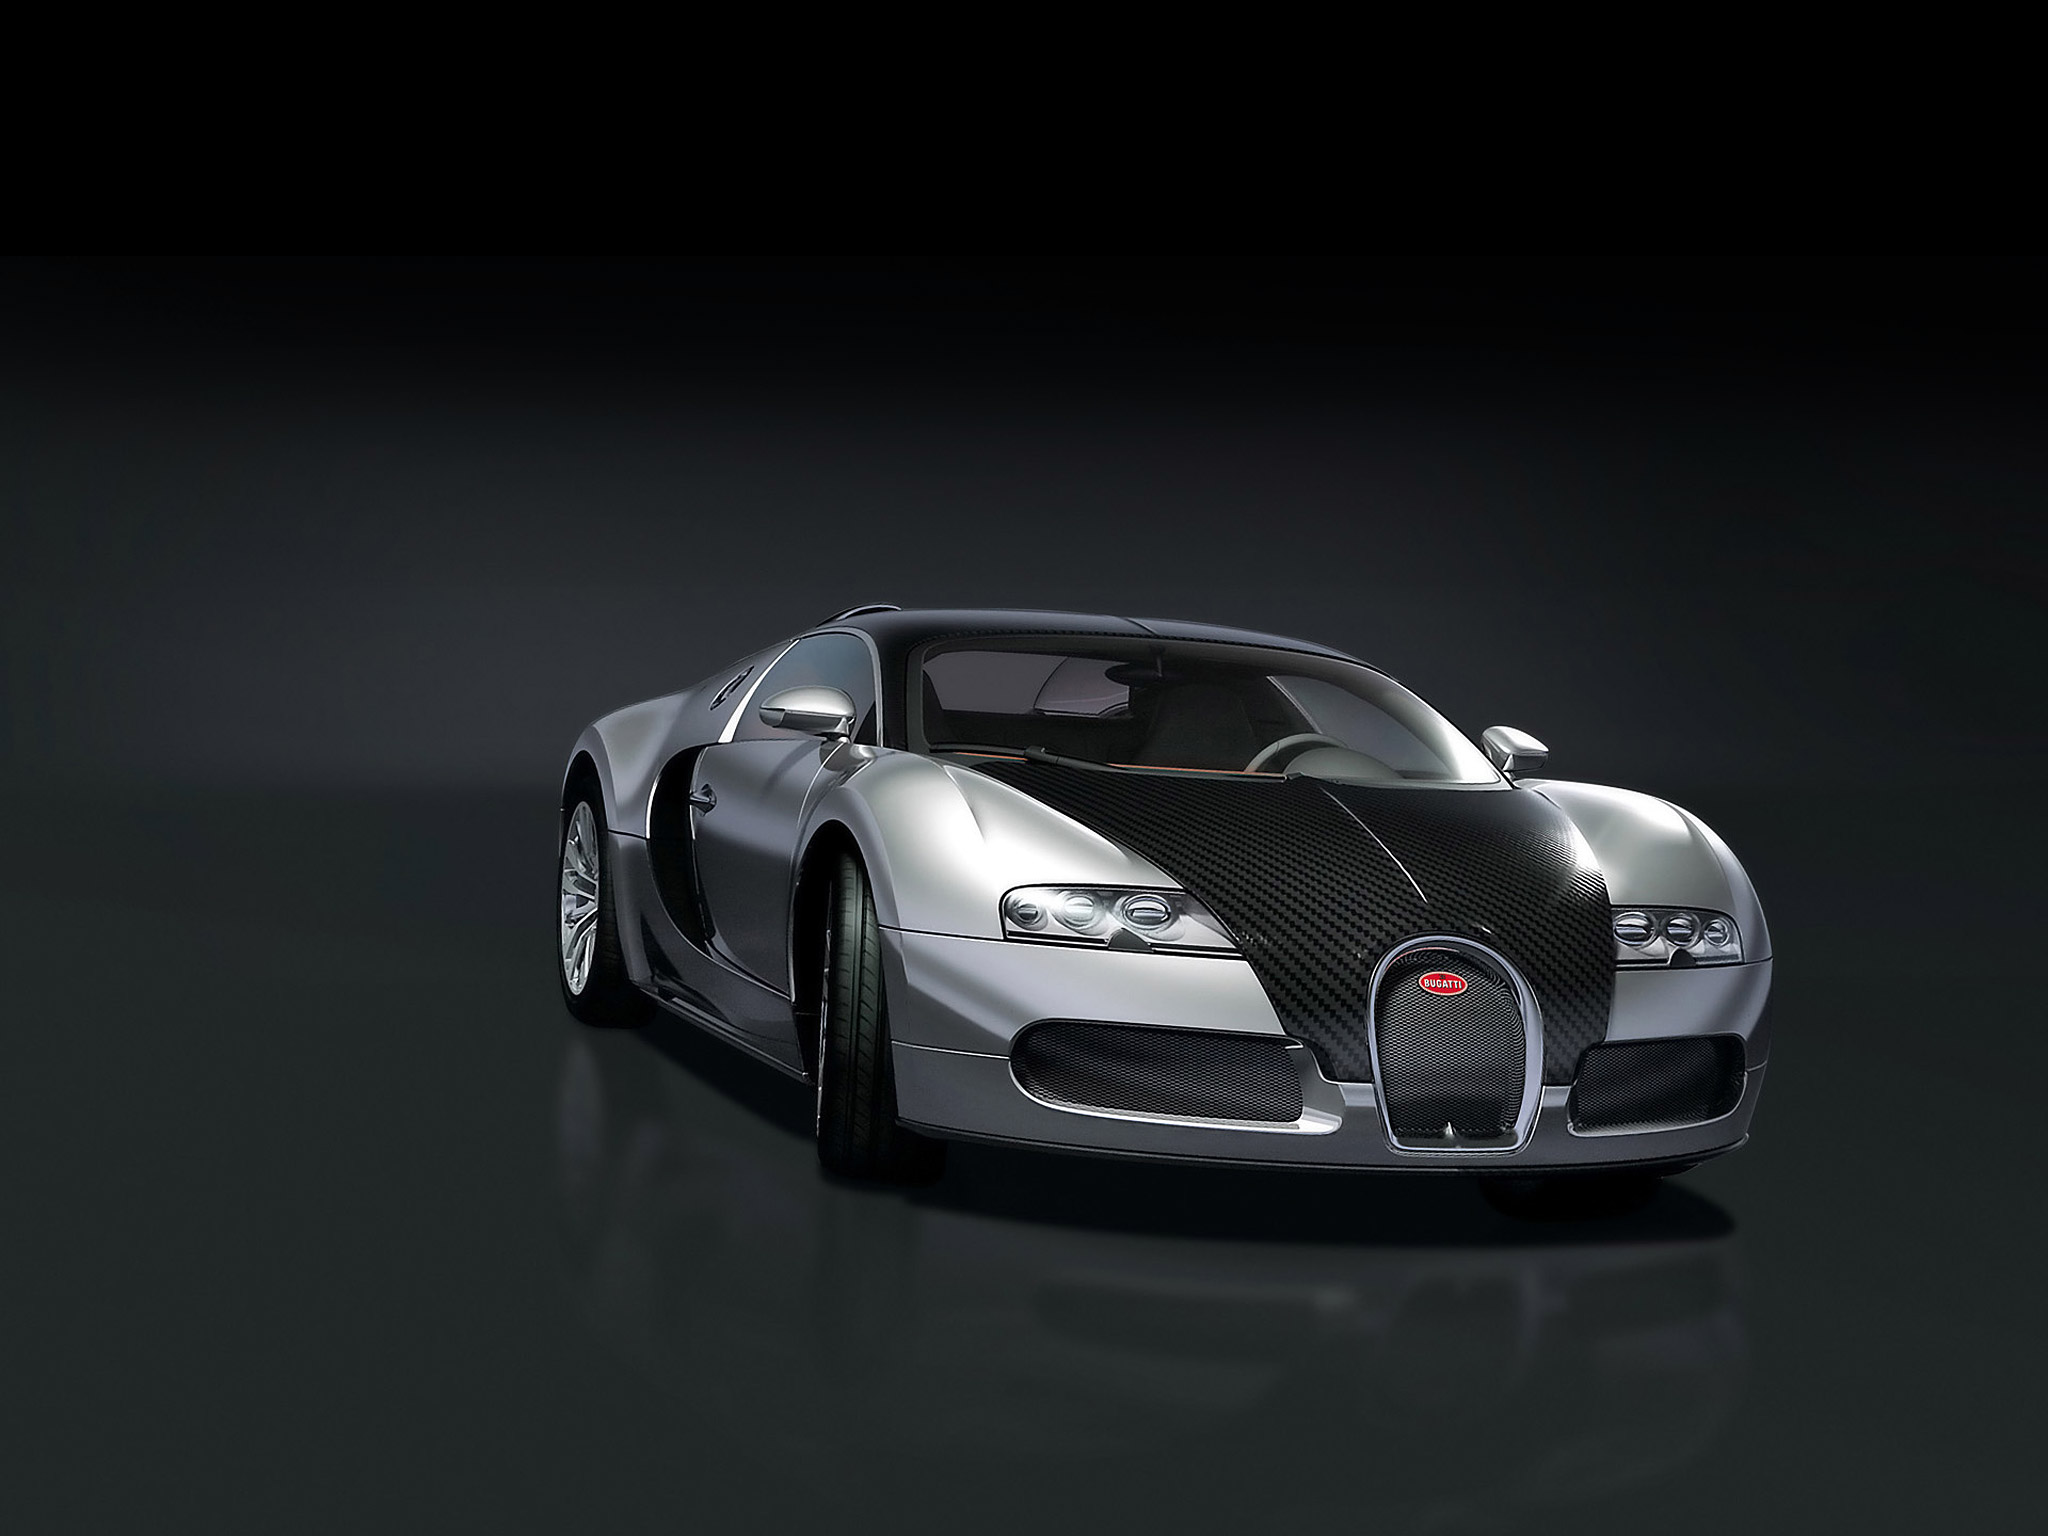 Descargar fondos de escritorio de Bugatti Veyron 16 4 Pur Sang HD